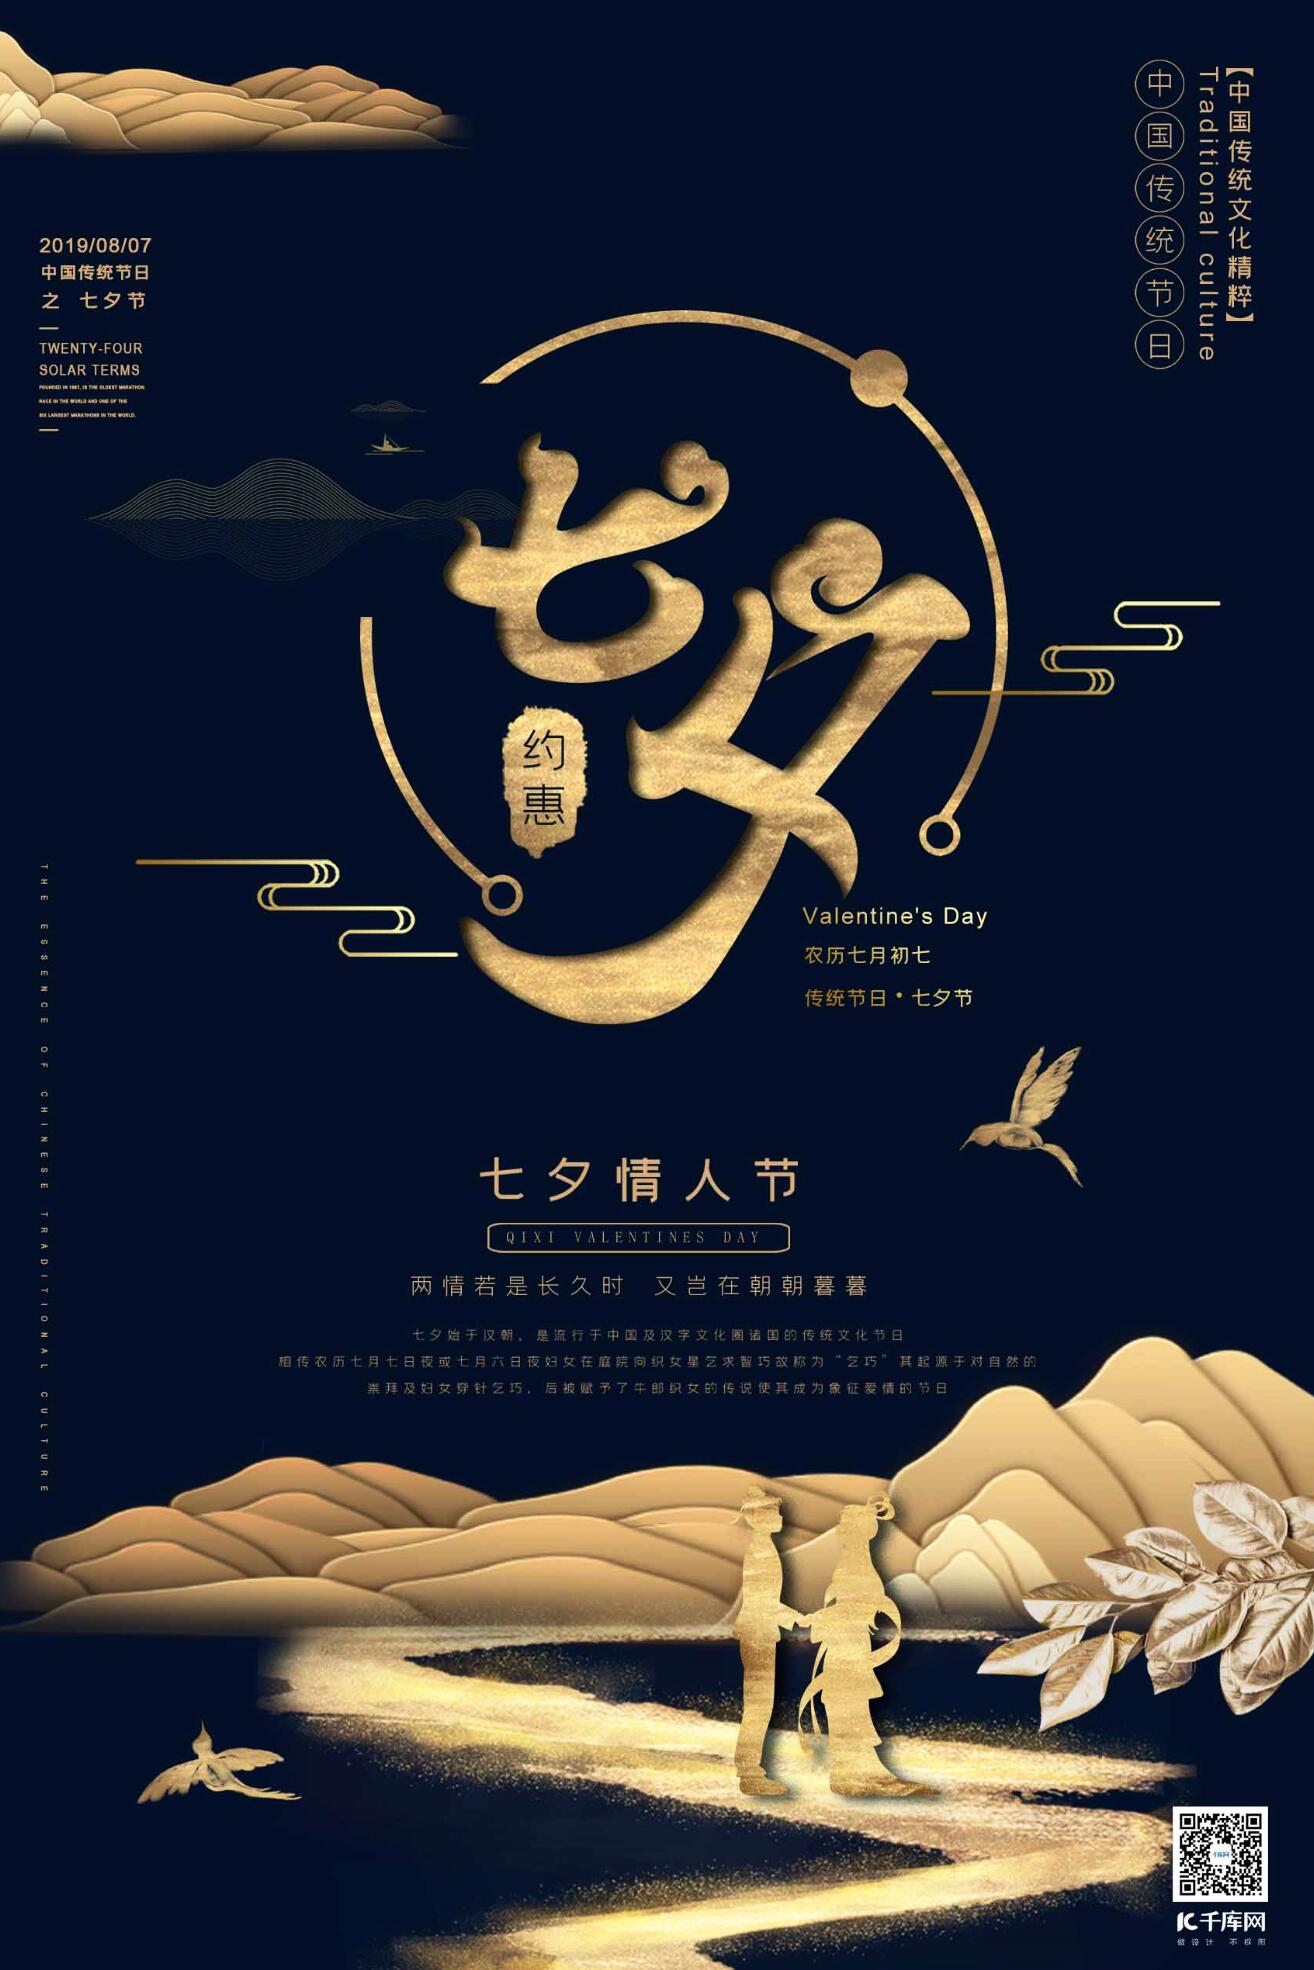 中国传统节日七夕节蓝金色简约新式中国风海报图片